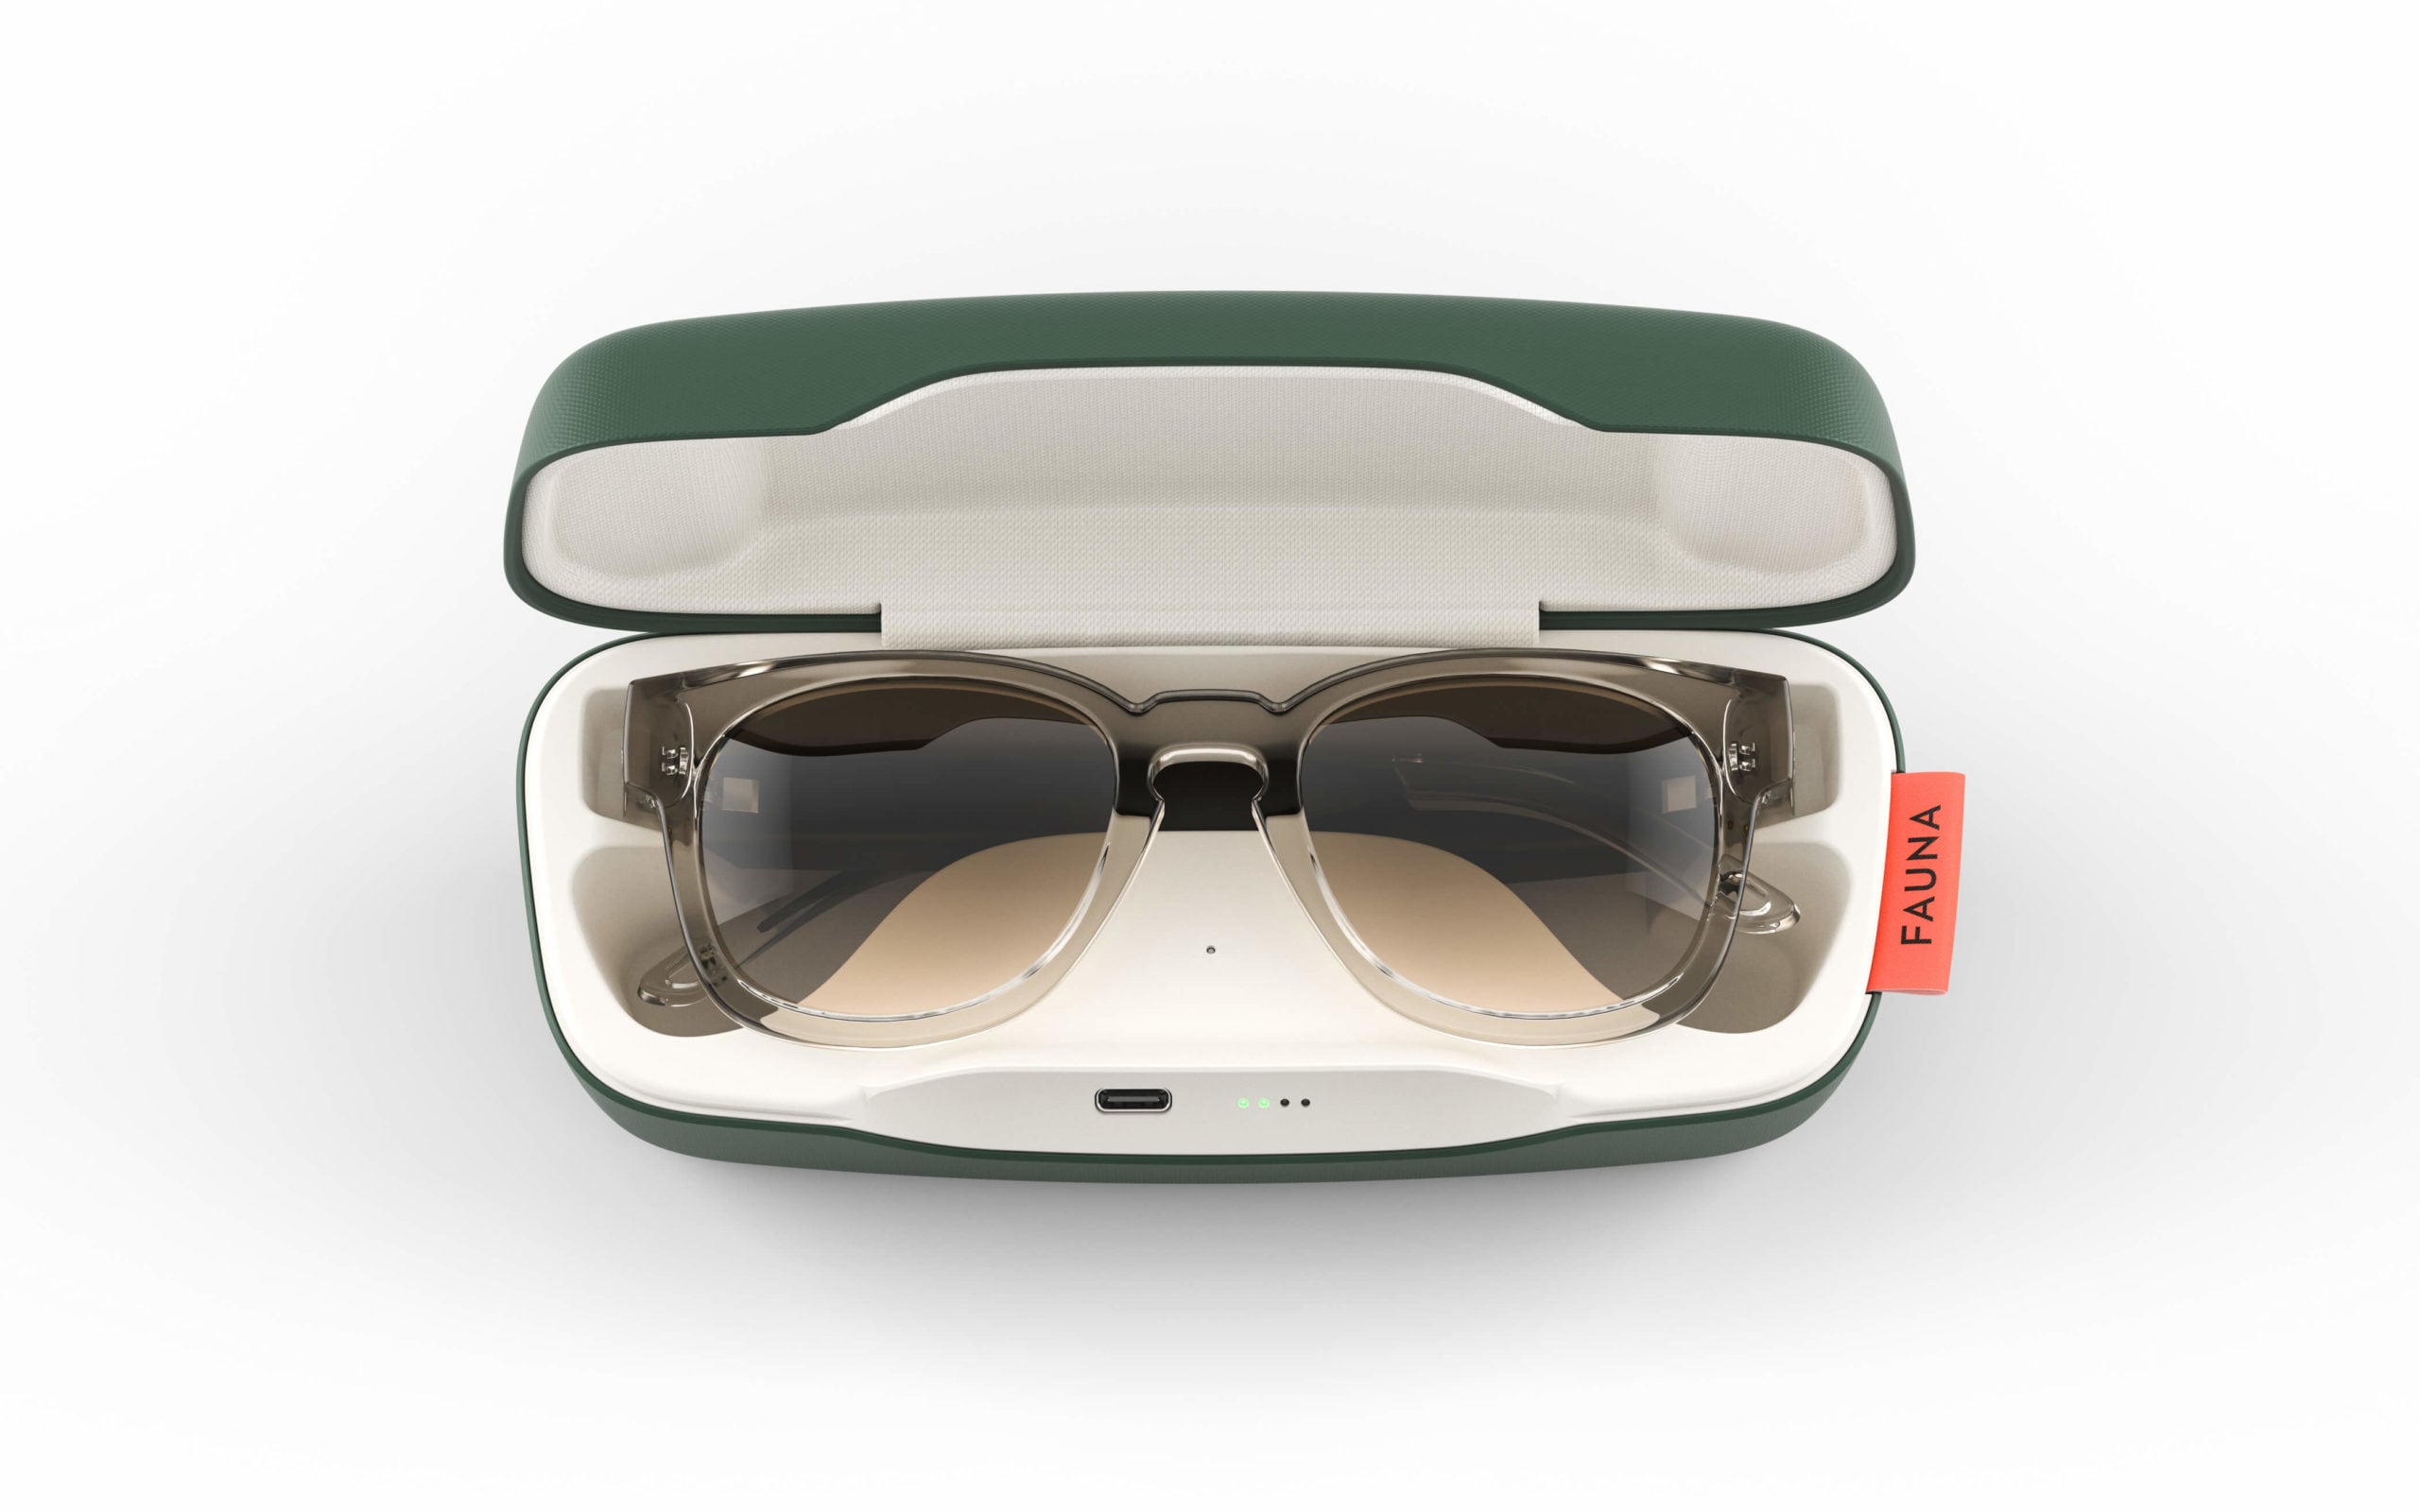 Fauna Spiro Transparent, the smart sunglasses